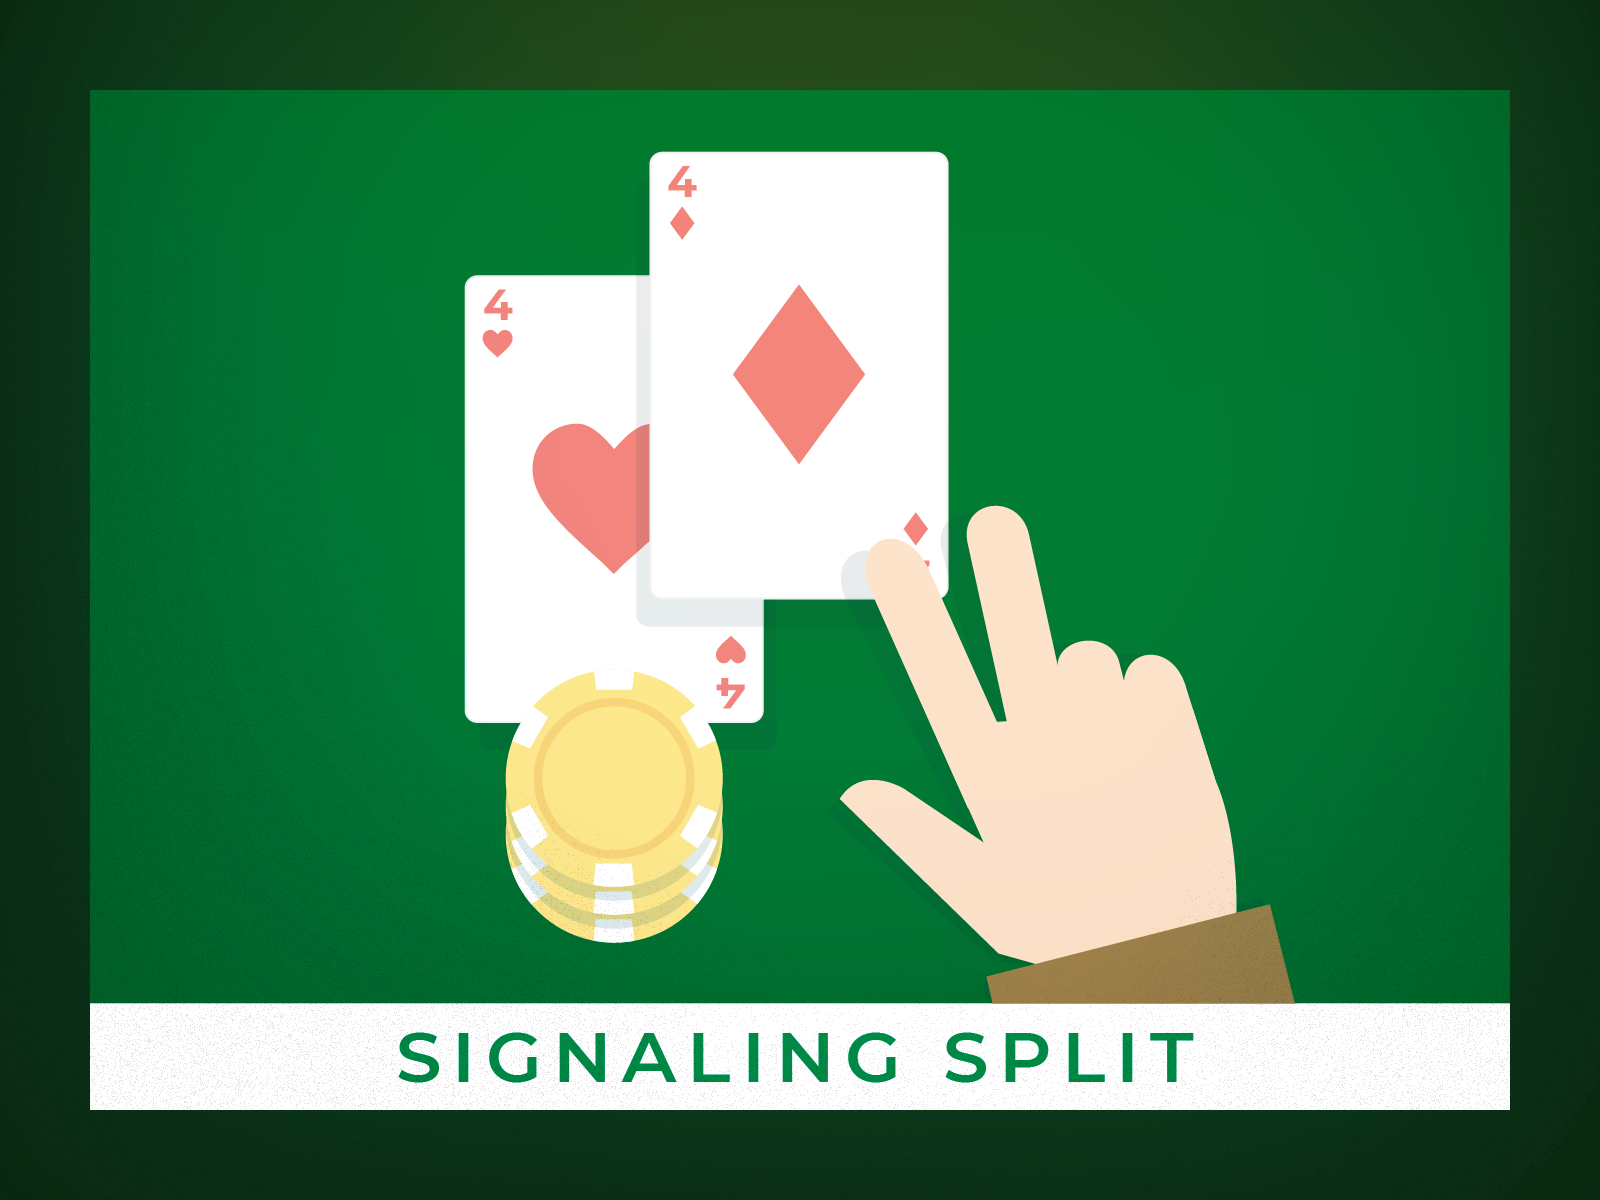 Signalling split in blackjack